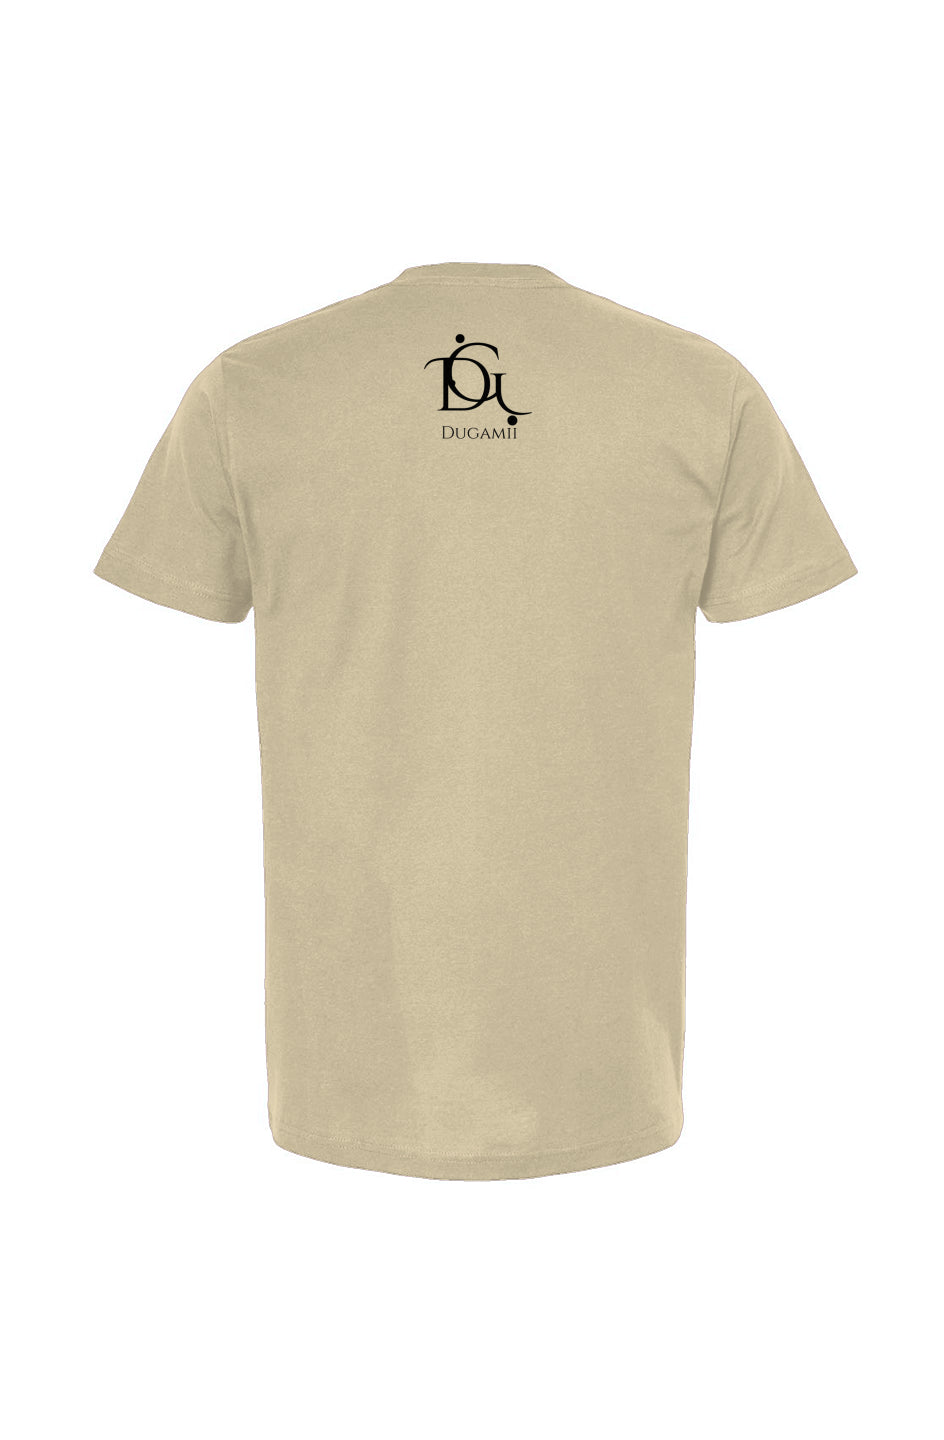 DuGamii Unisex "Eagle of America" Vintage White T Shirt